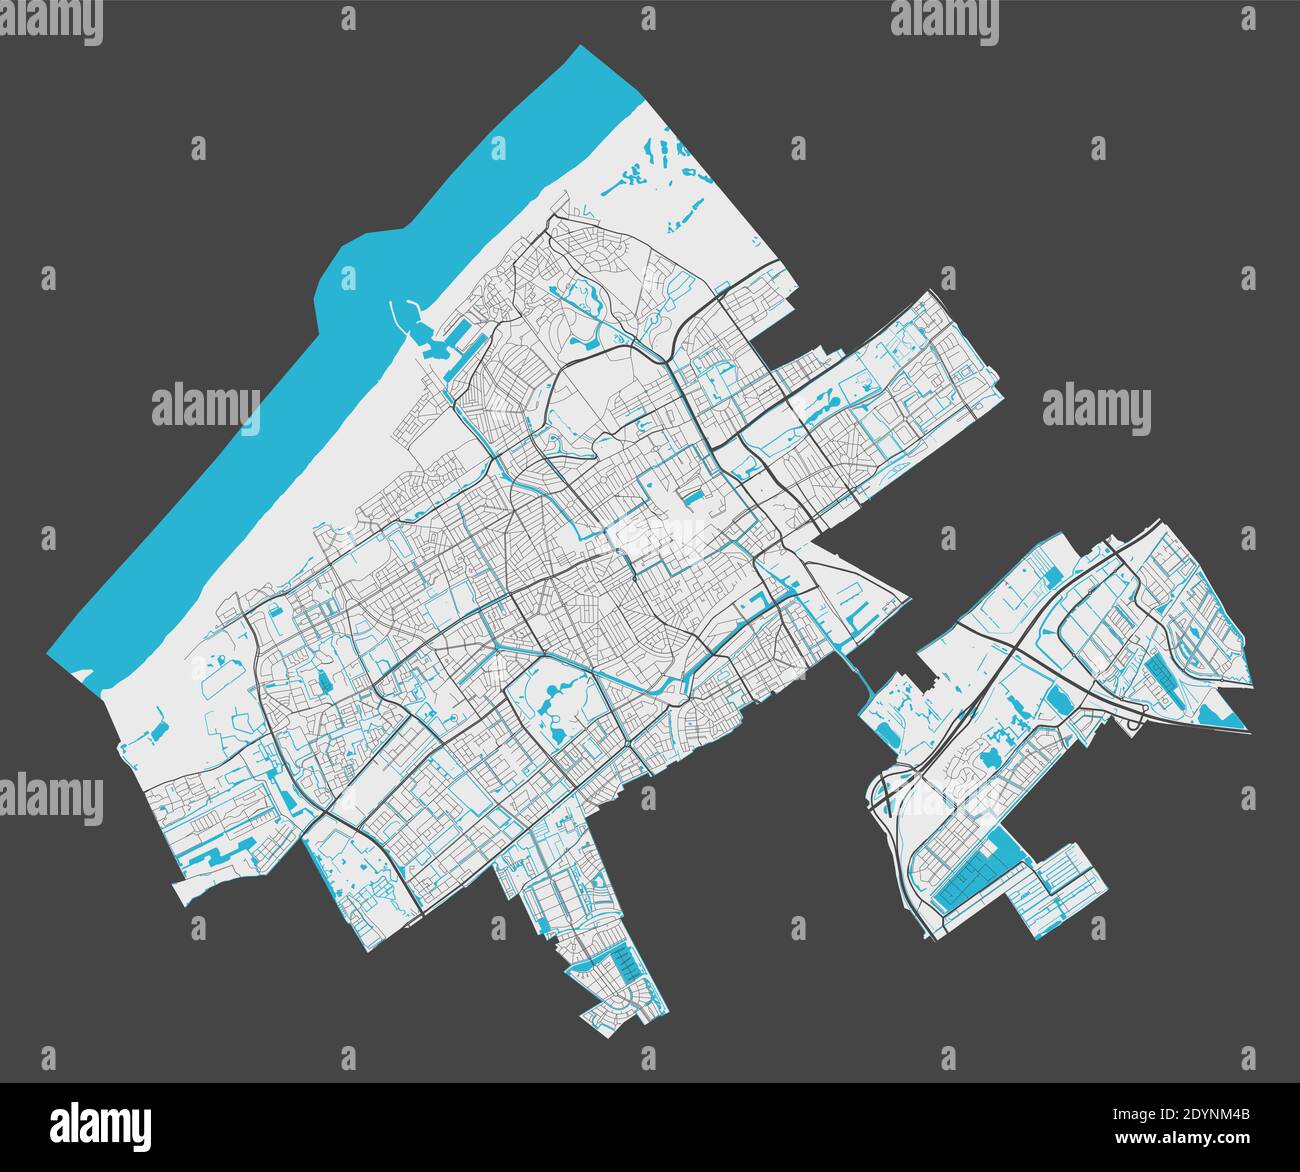 Mapa de la haya. Mapa detallado de la zona administrativa de la ciudad de la haya. Panorama urbano. Ilustración vectorial libre de derechos de autor. Mapa con carreteras, calles, r Ilustración del Vector